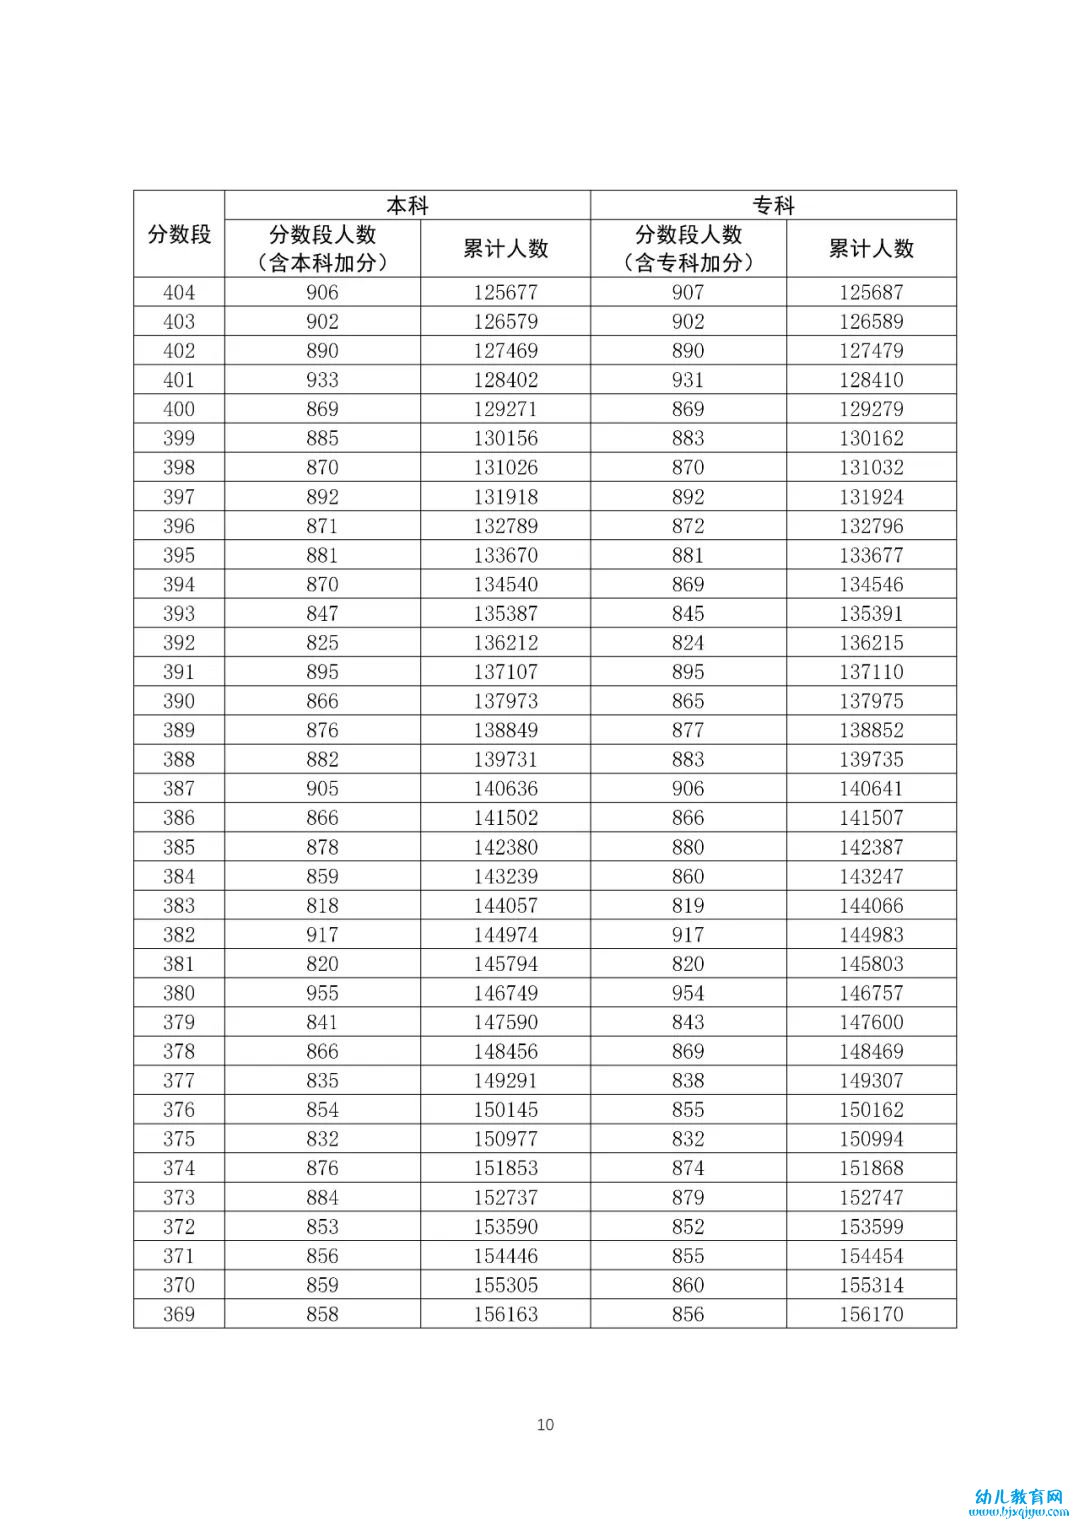 八省联考成绩对照:广东2020高考文史类一分一段表